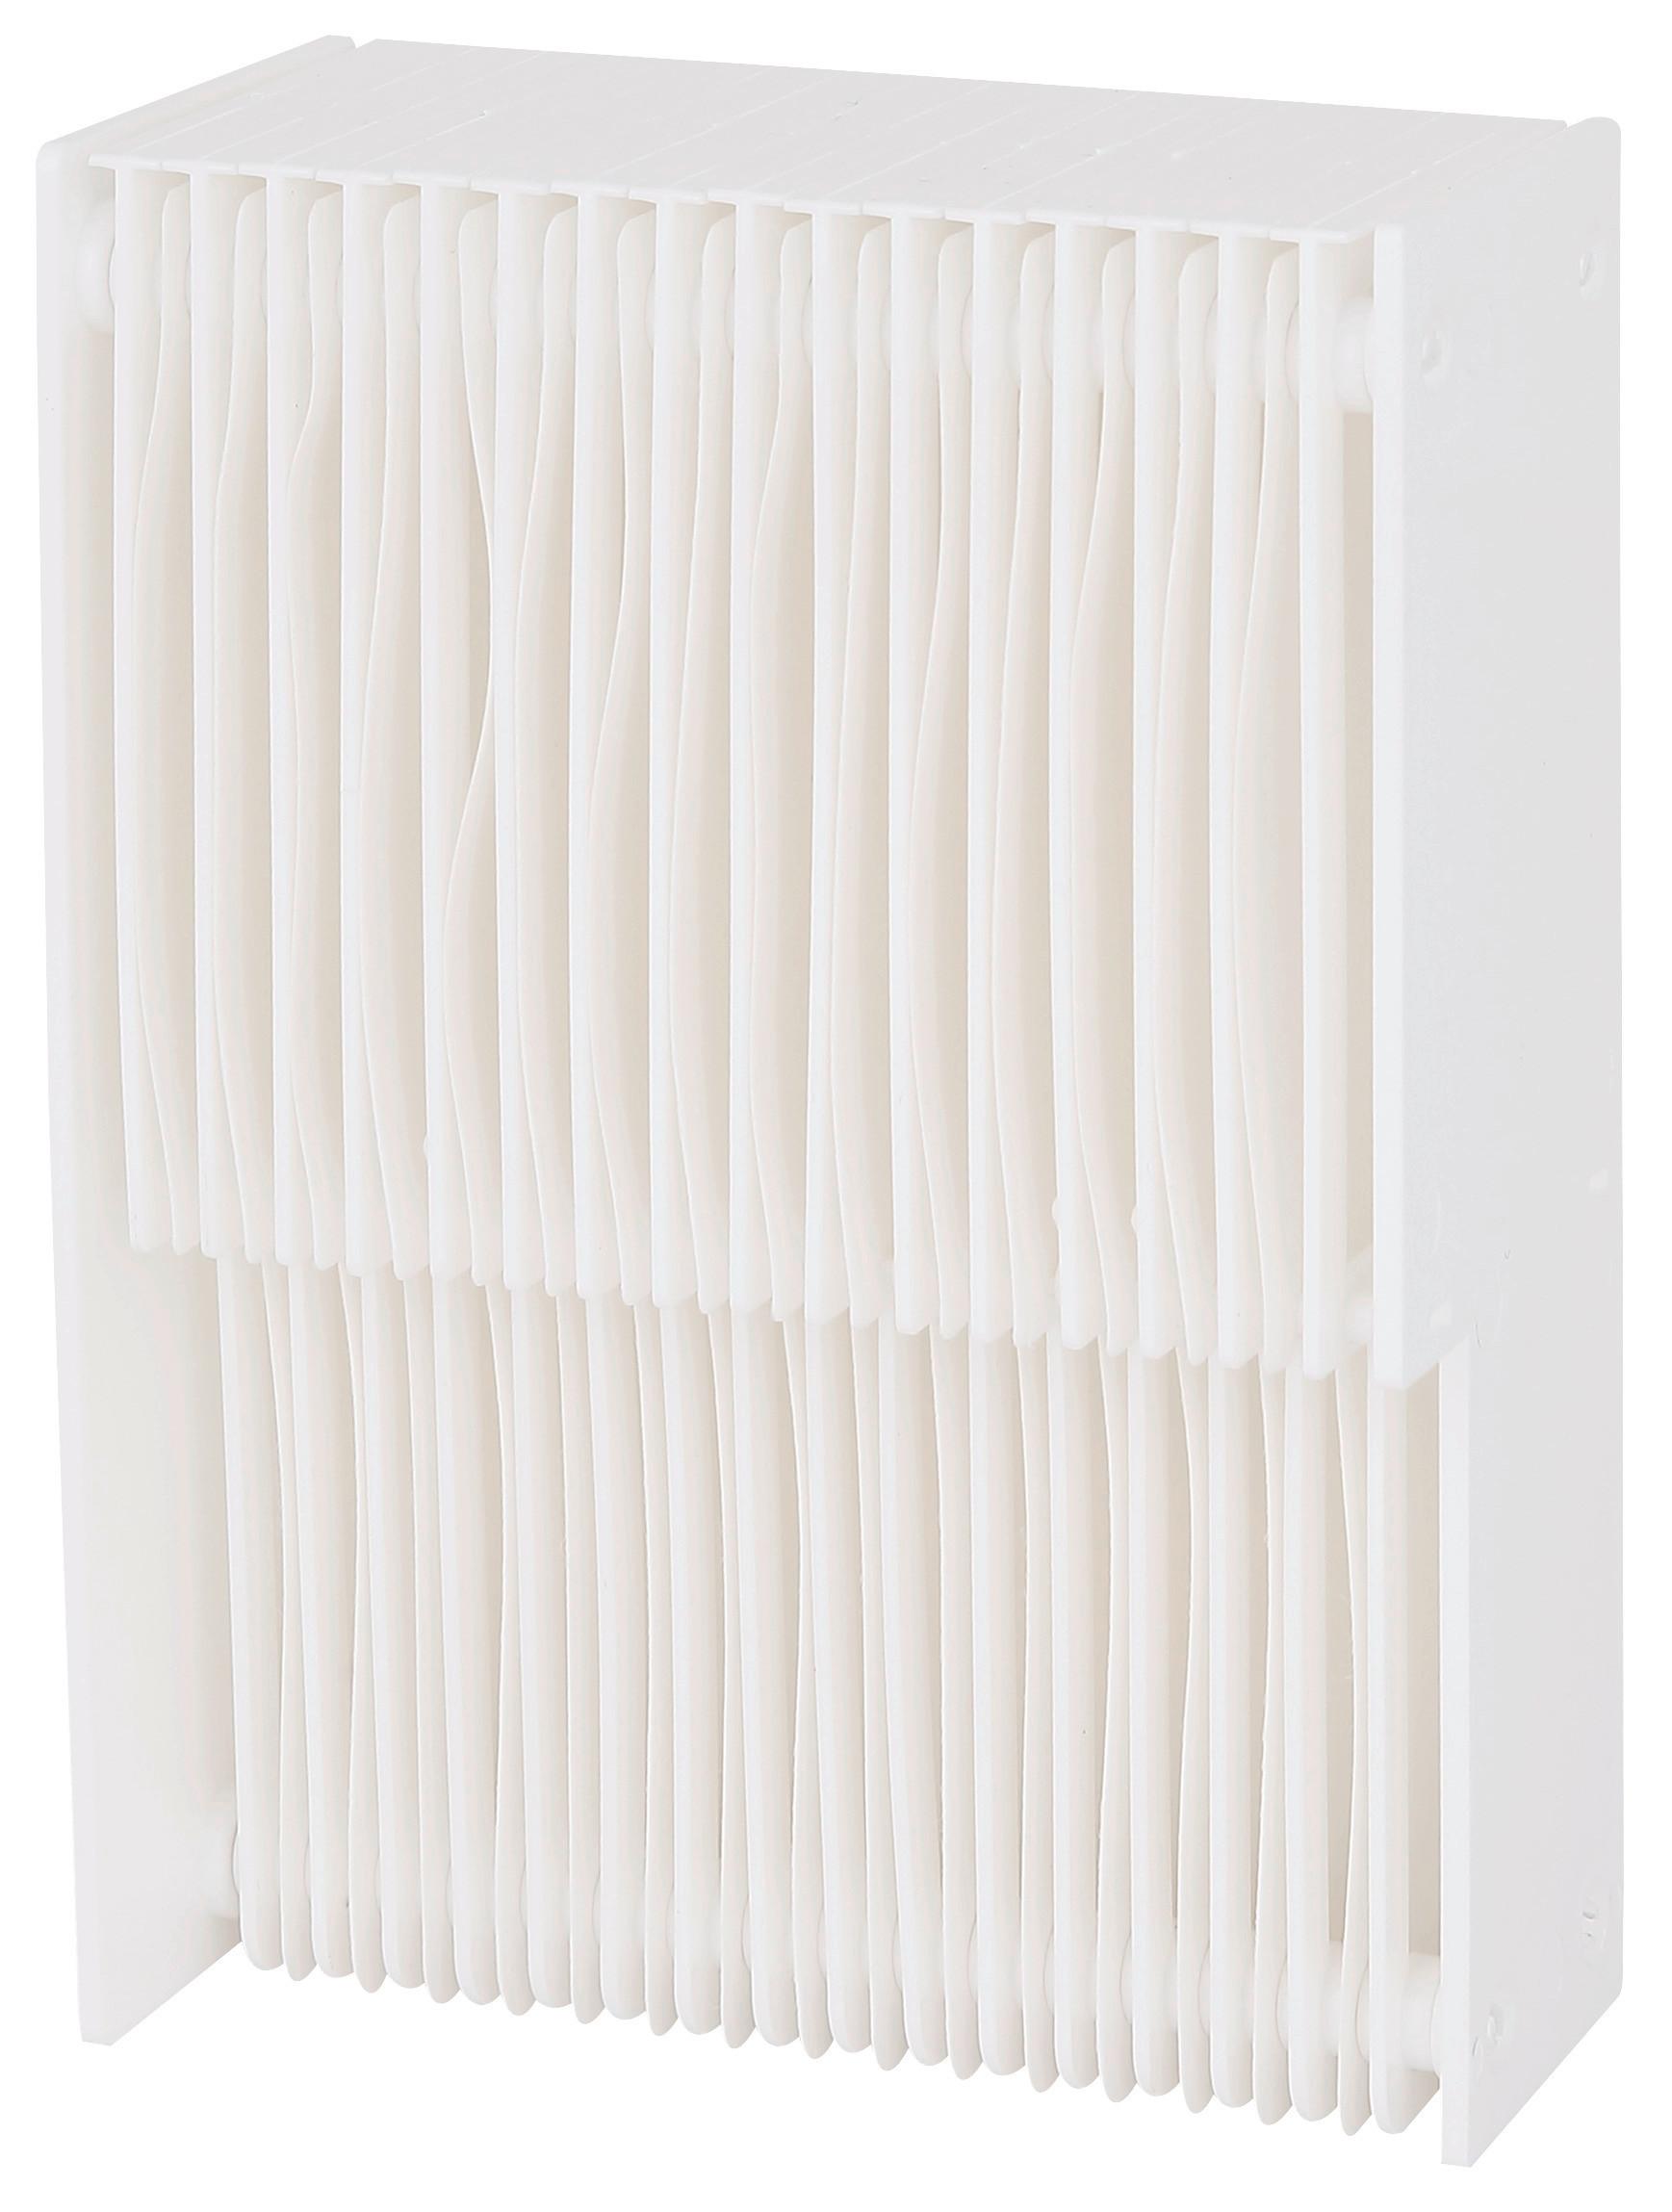 Luftkühler-Ersatzfilter Tolly - Weiß, Papier/Kunststoff (10,05/14,3/5,1cm) - Insido